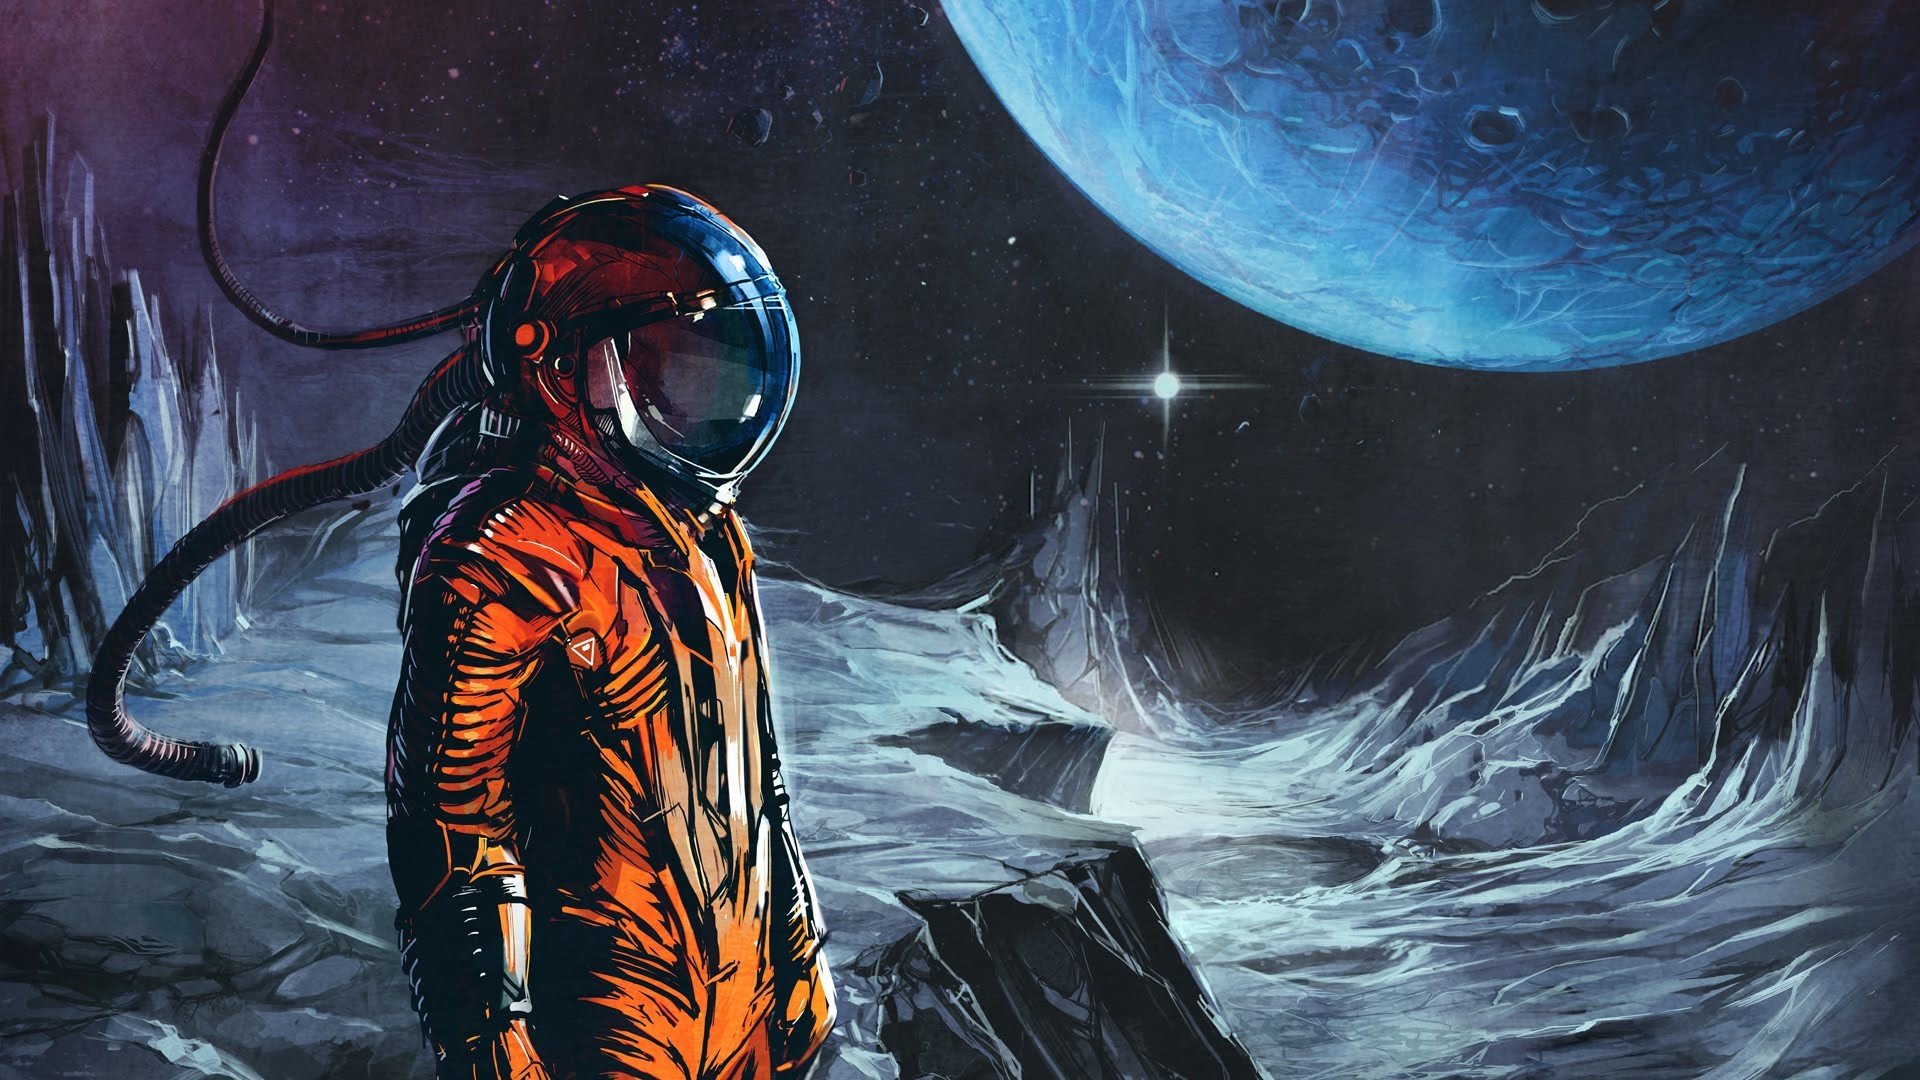 space suit, Astronaut, Artwork, Space, Science fiction, Space art Wallpaper